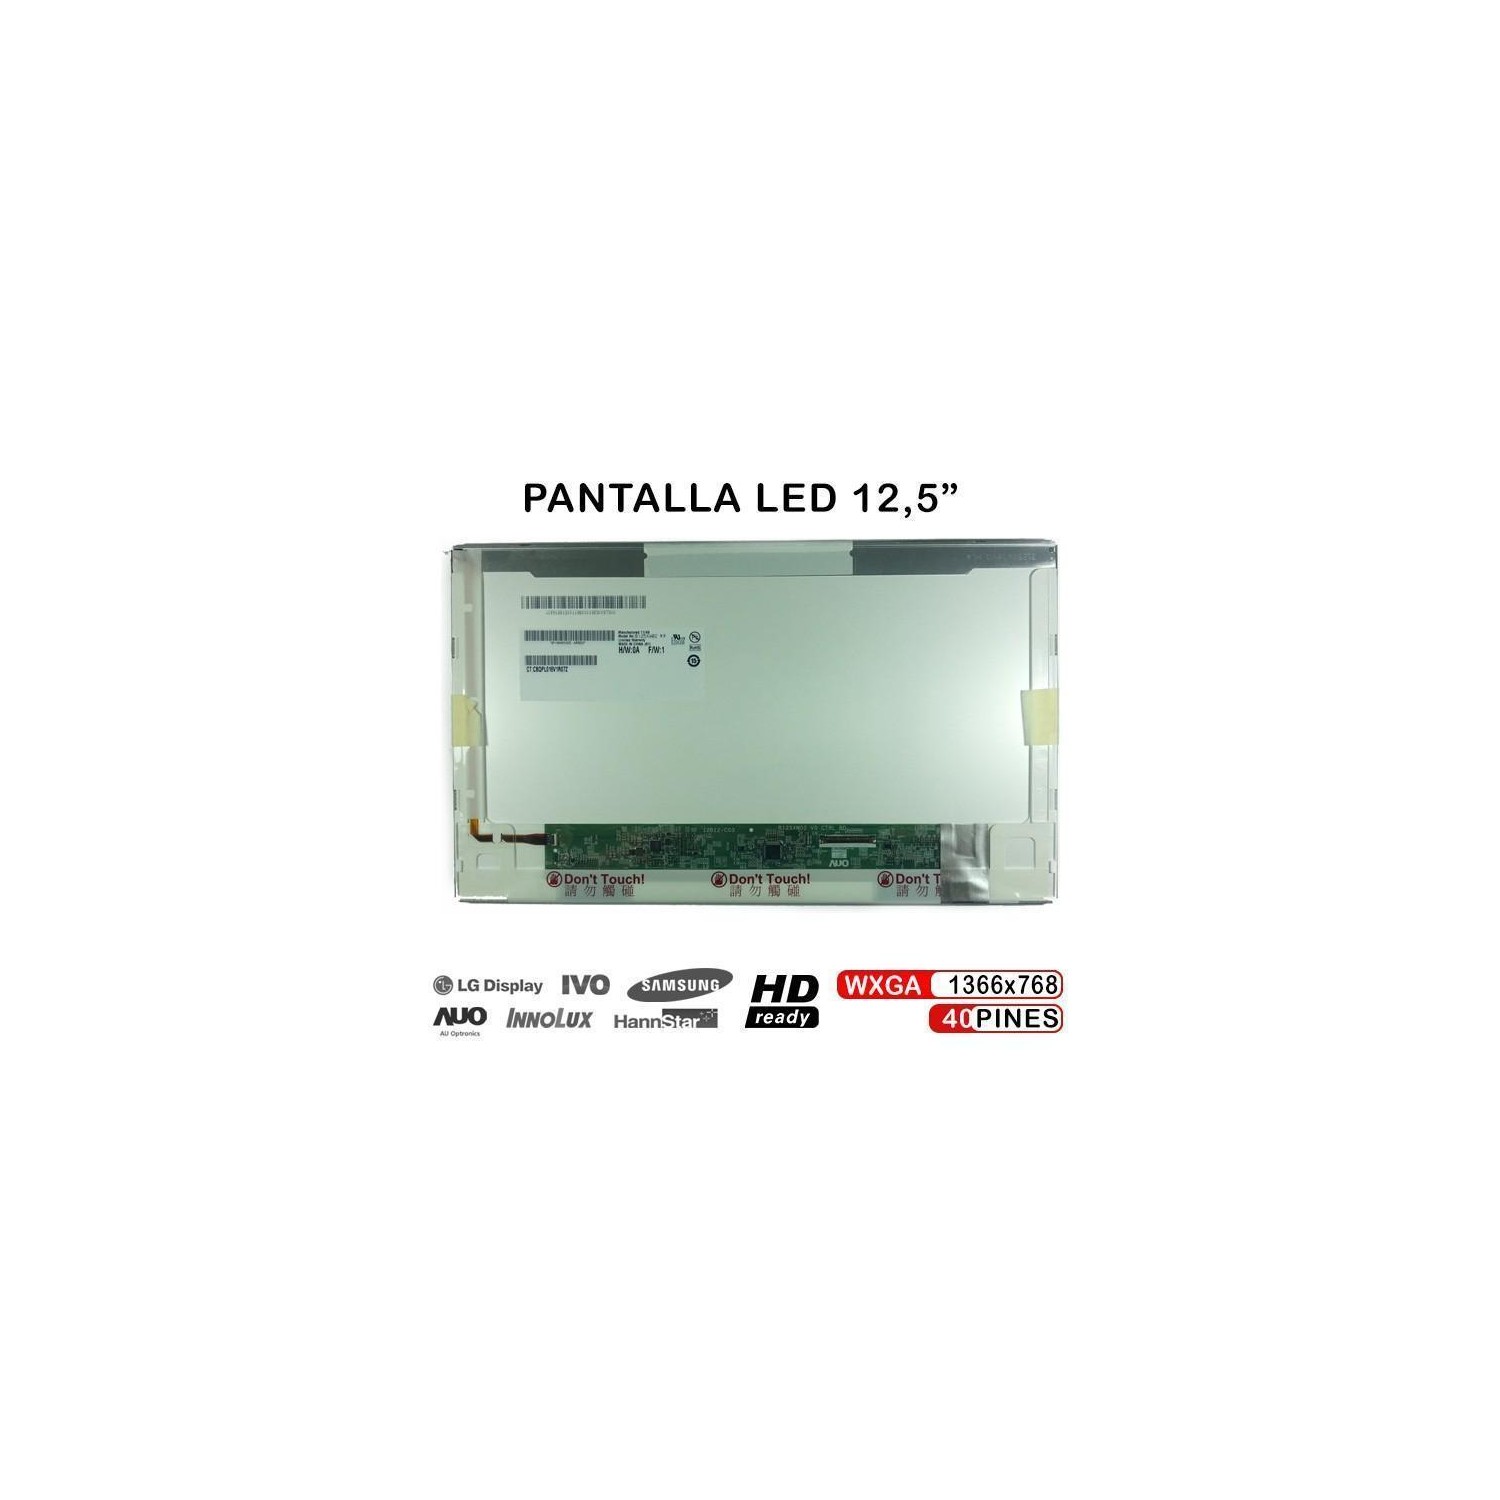 PANTALLA PORTÁTIL LED 12.5 B125XW02